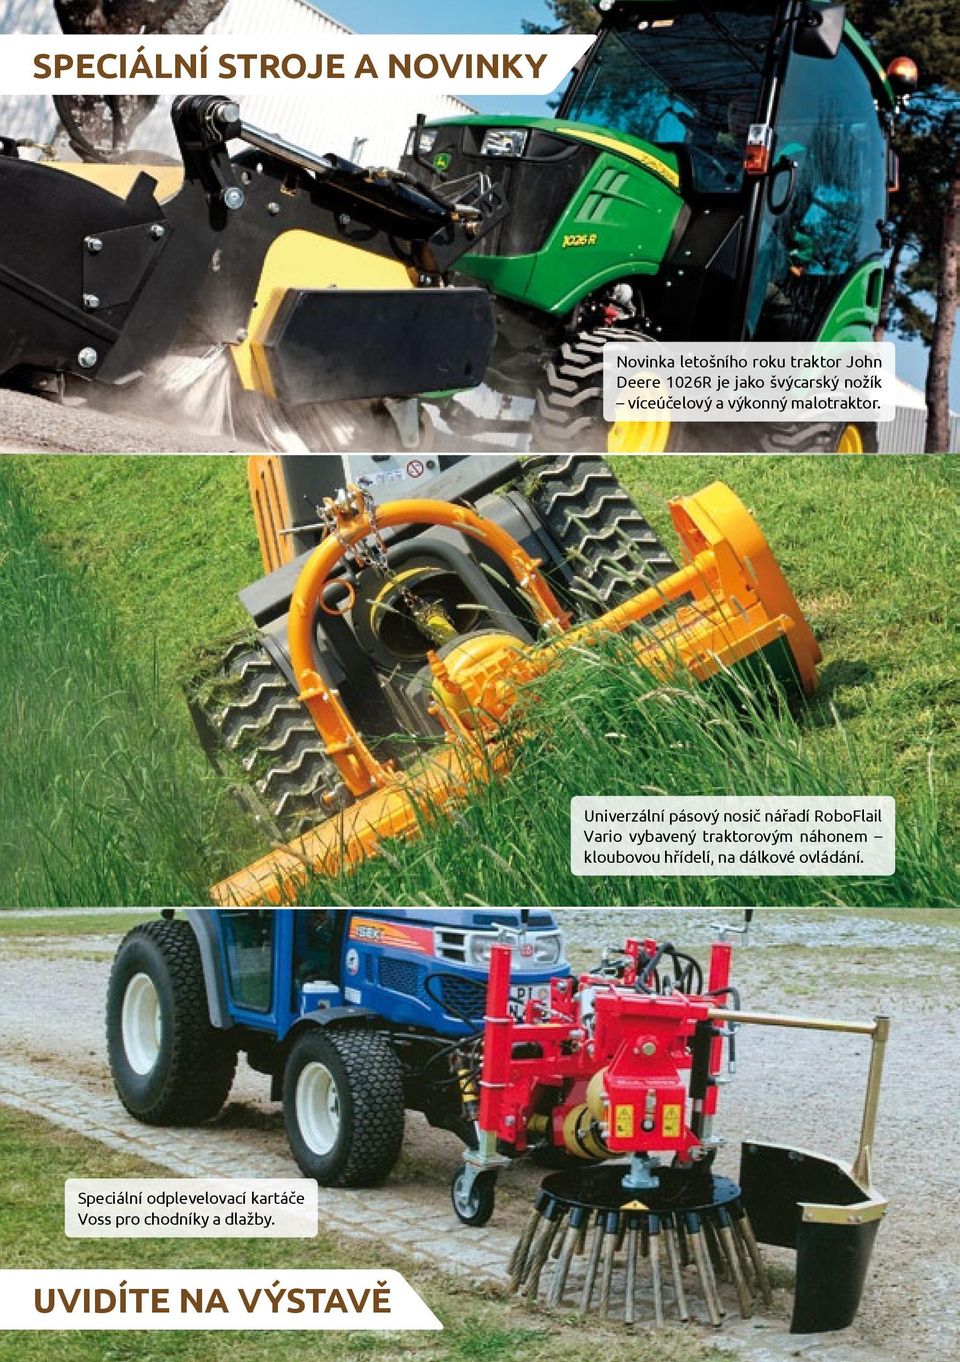 Univerzální pásový nosič nářadí RoboFlail Vario vybavený traktorovým náhonem